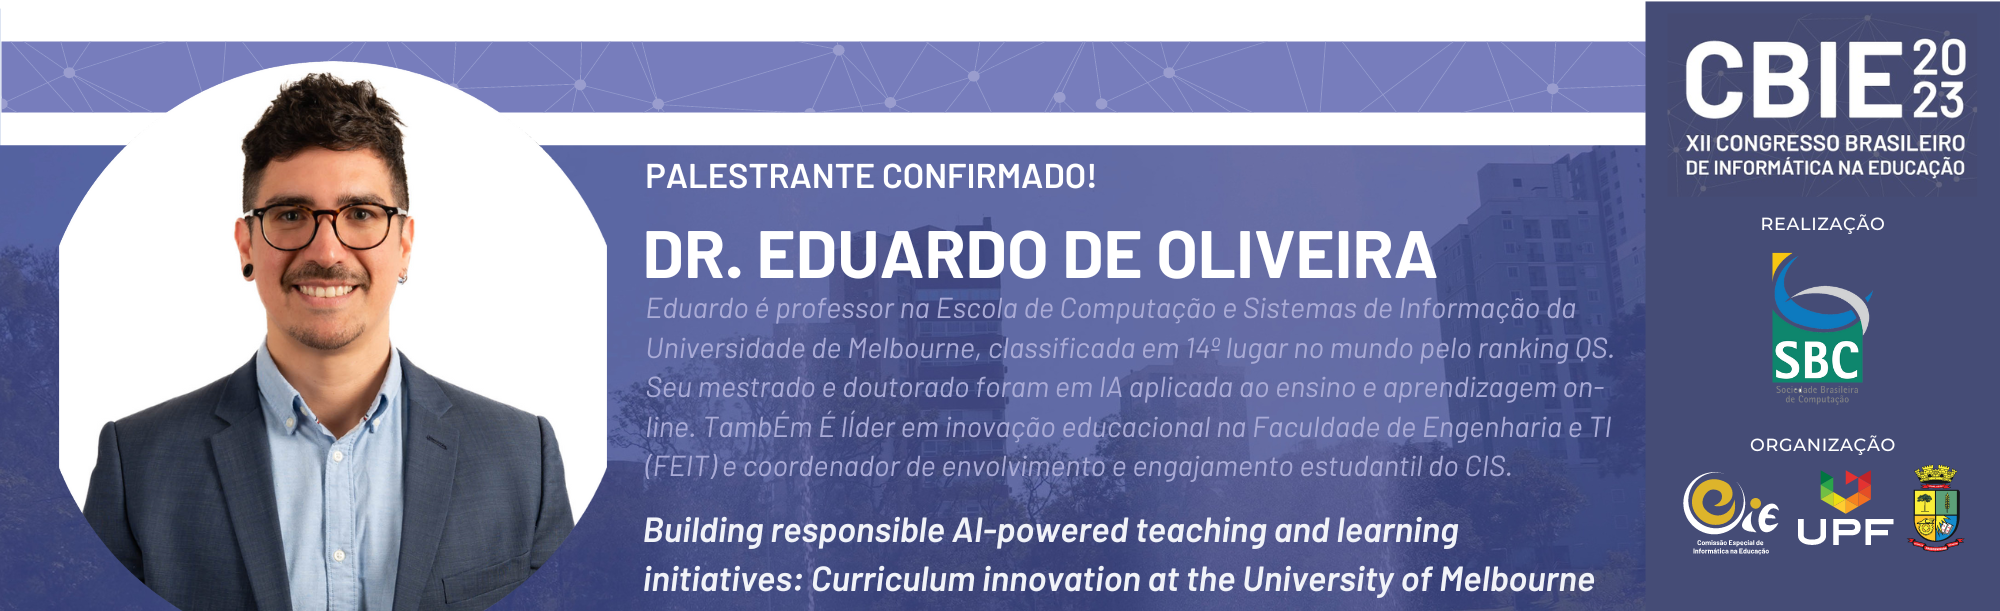 EDUARDO DE OLIVEIRA